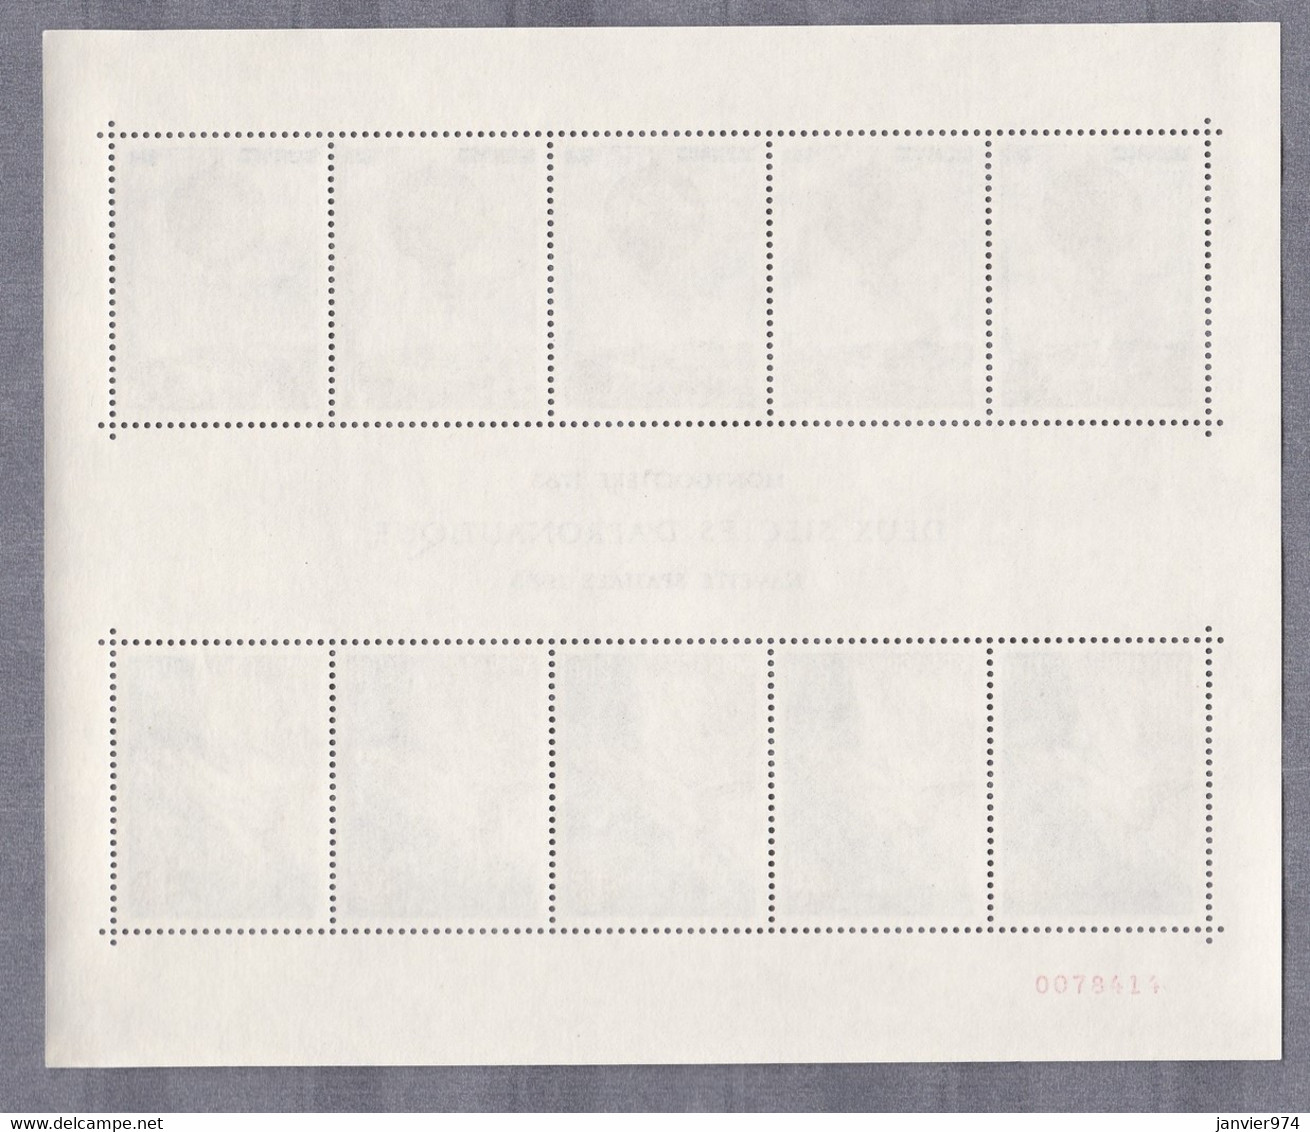 Monaco 1982 et 1983 . 100 timbres Neufs  sans trace de charnière , blocs , scans recto verso